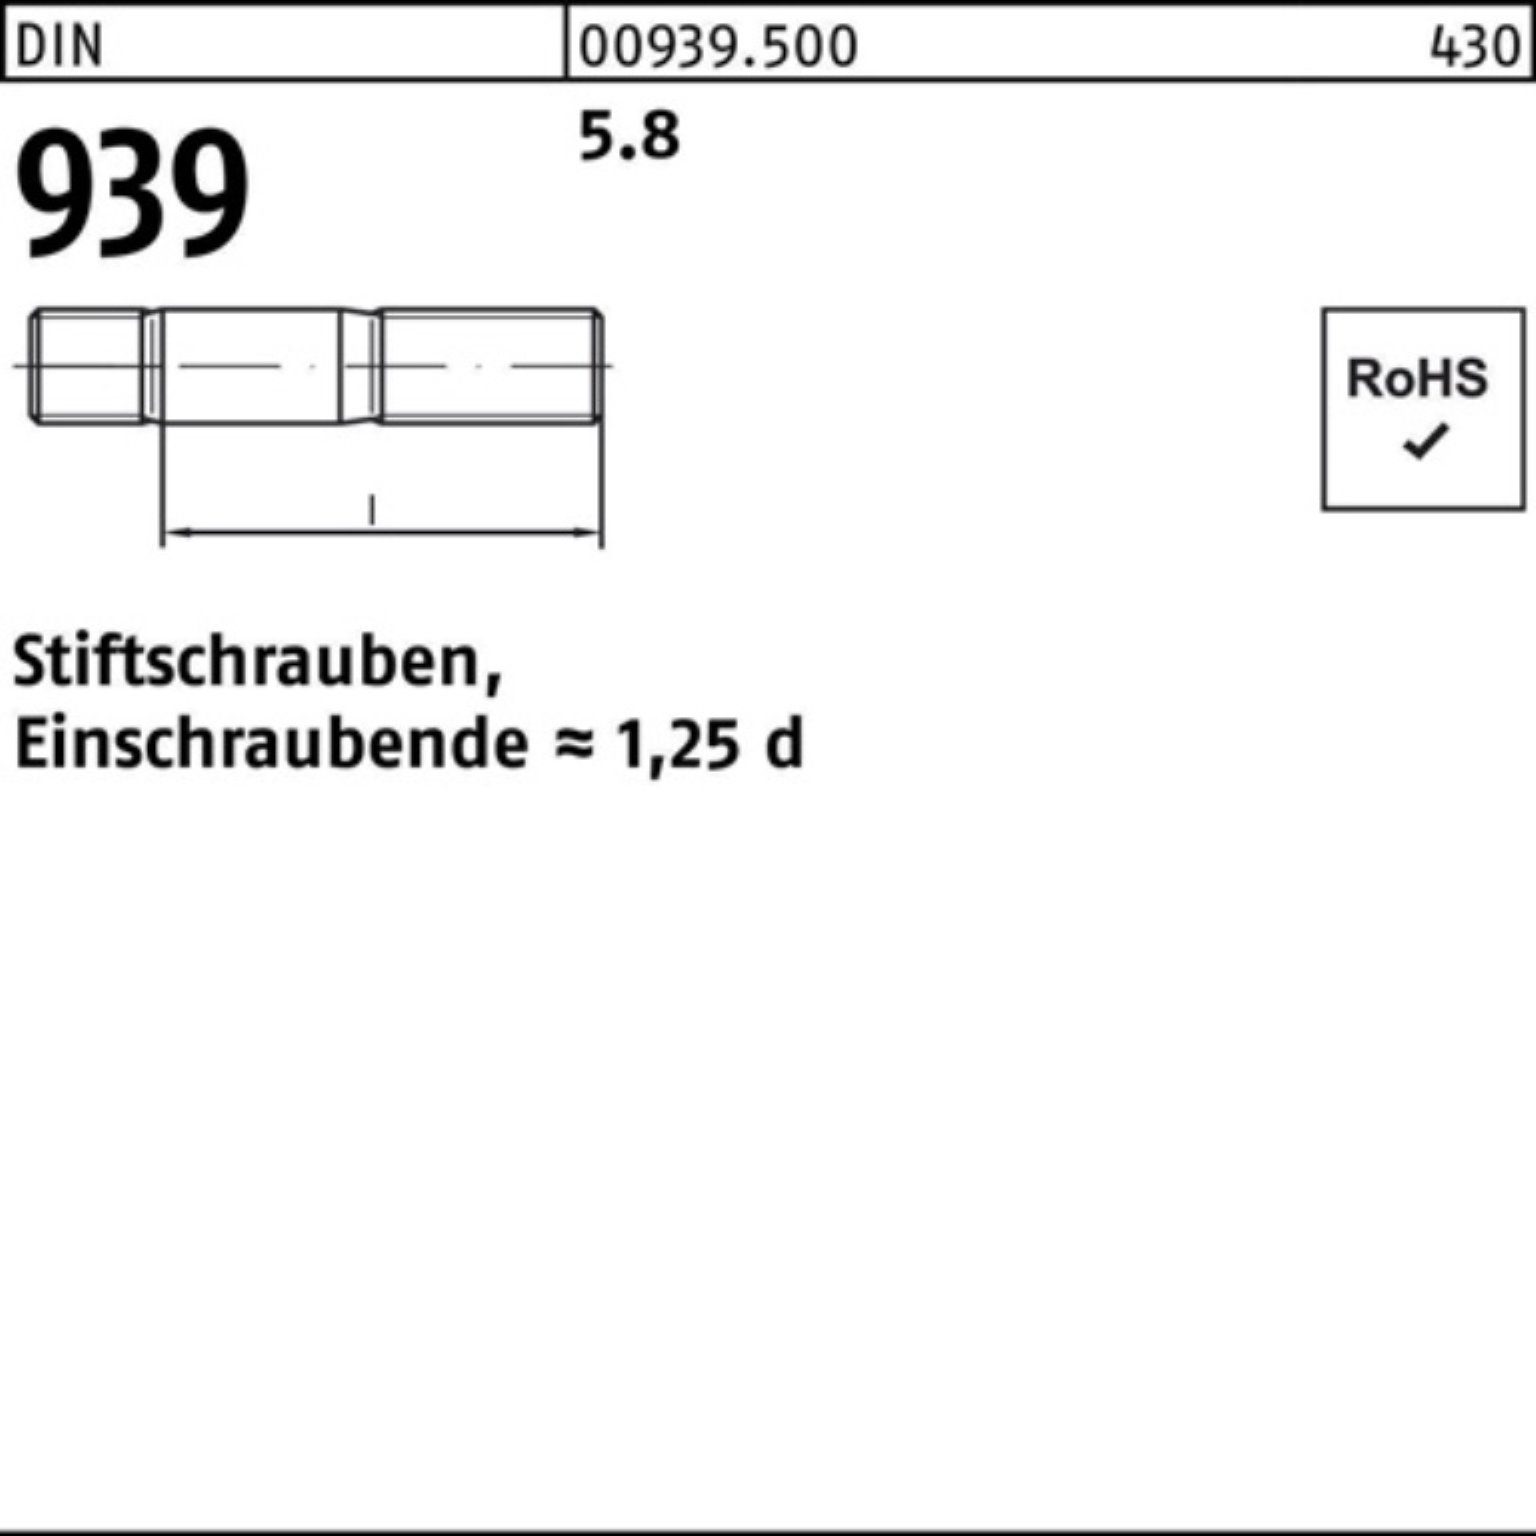 M16x 10 939 Einschraubende=1,25d Stiftschraube Stiftschraube Reyher Pack 180 DIN 100er 5.8